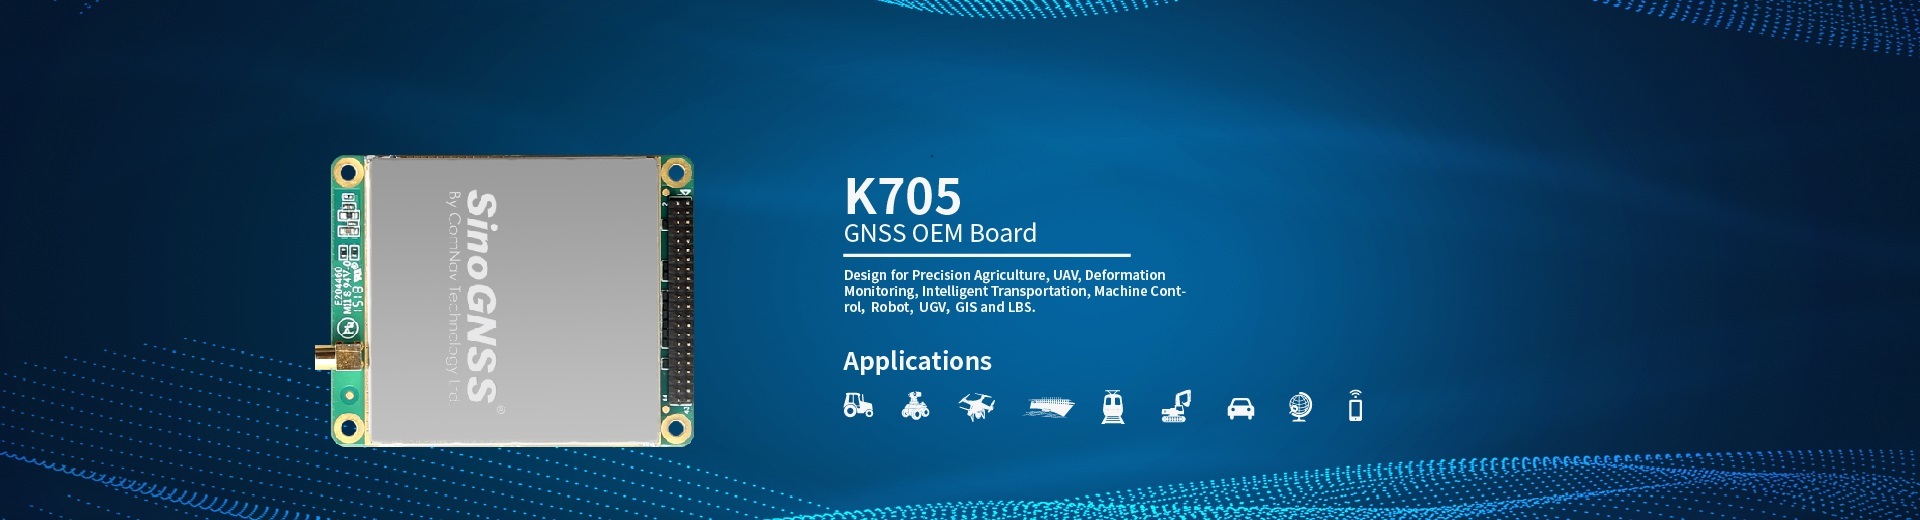 K705 GNSS OEM Board (EOL)